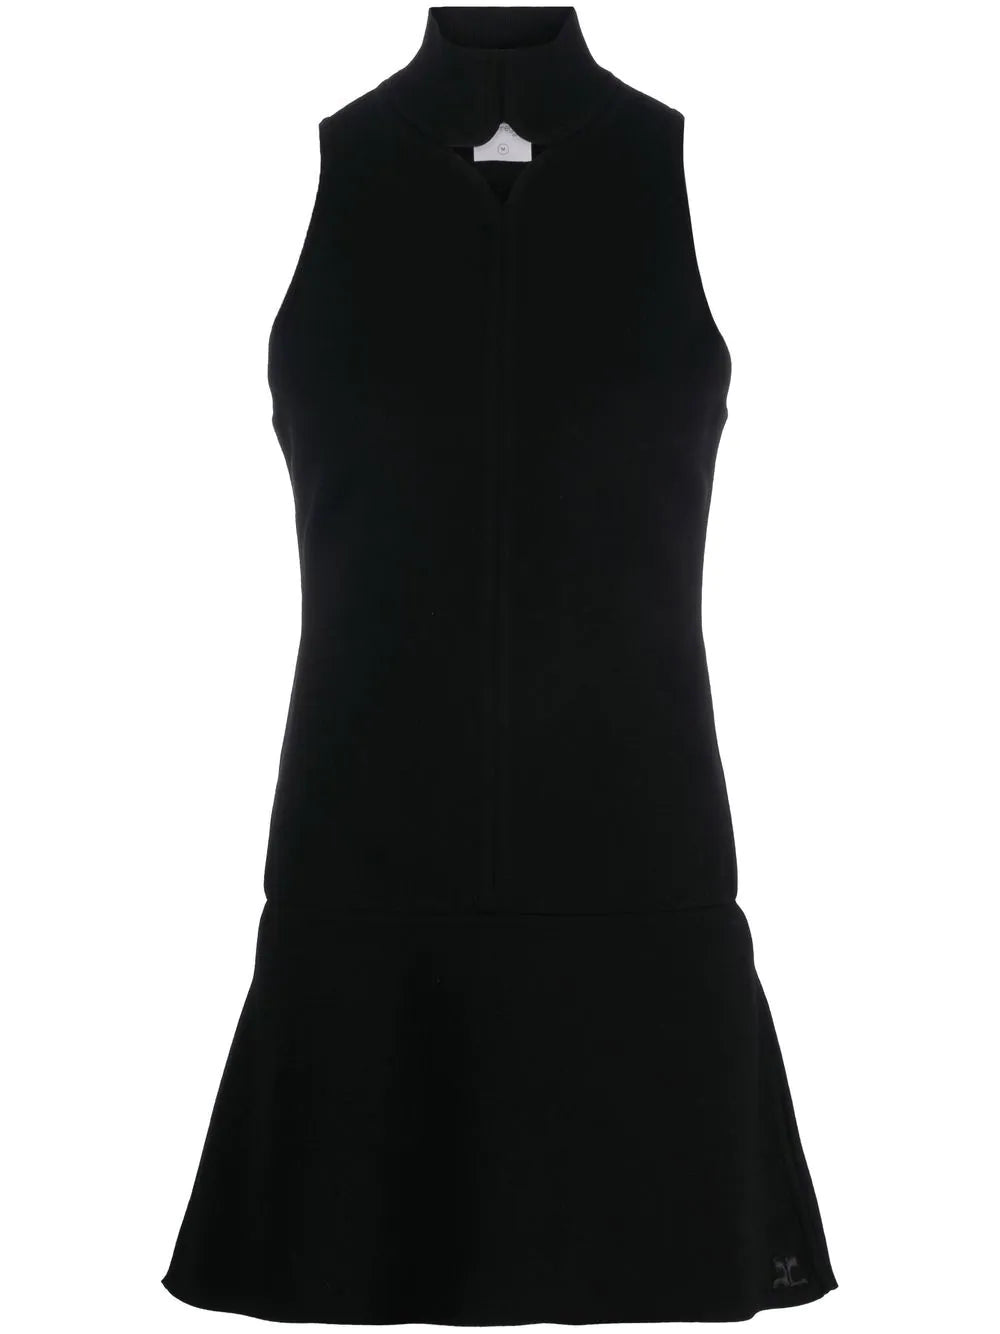 COURRÉGES WOMEN Diamond Neck Dress Black - MAISONDEFASHION.COM